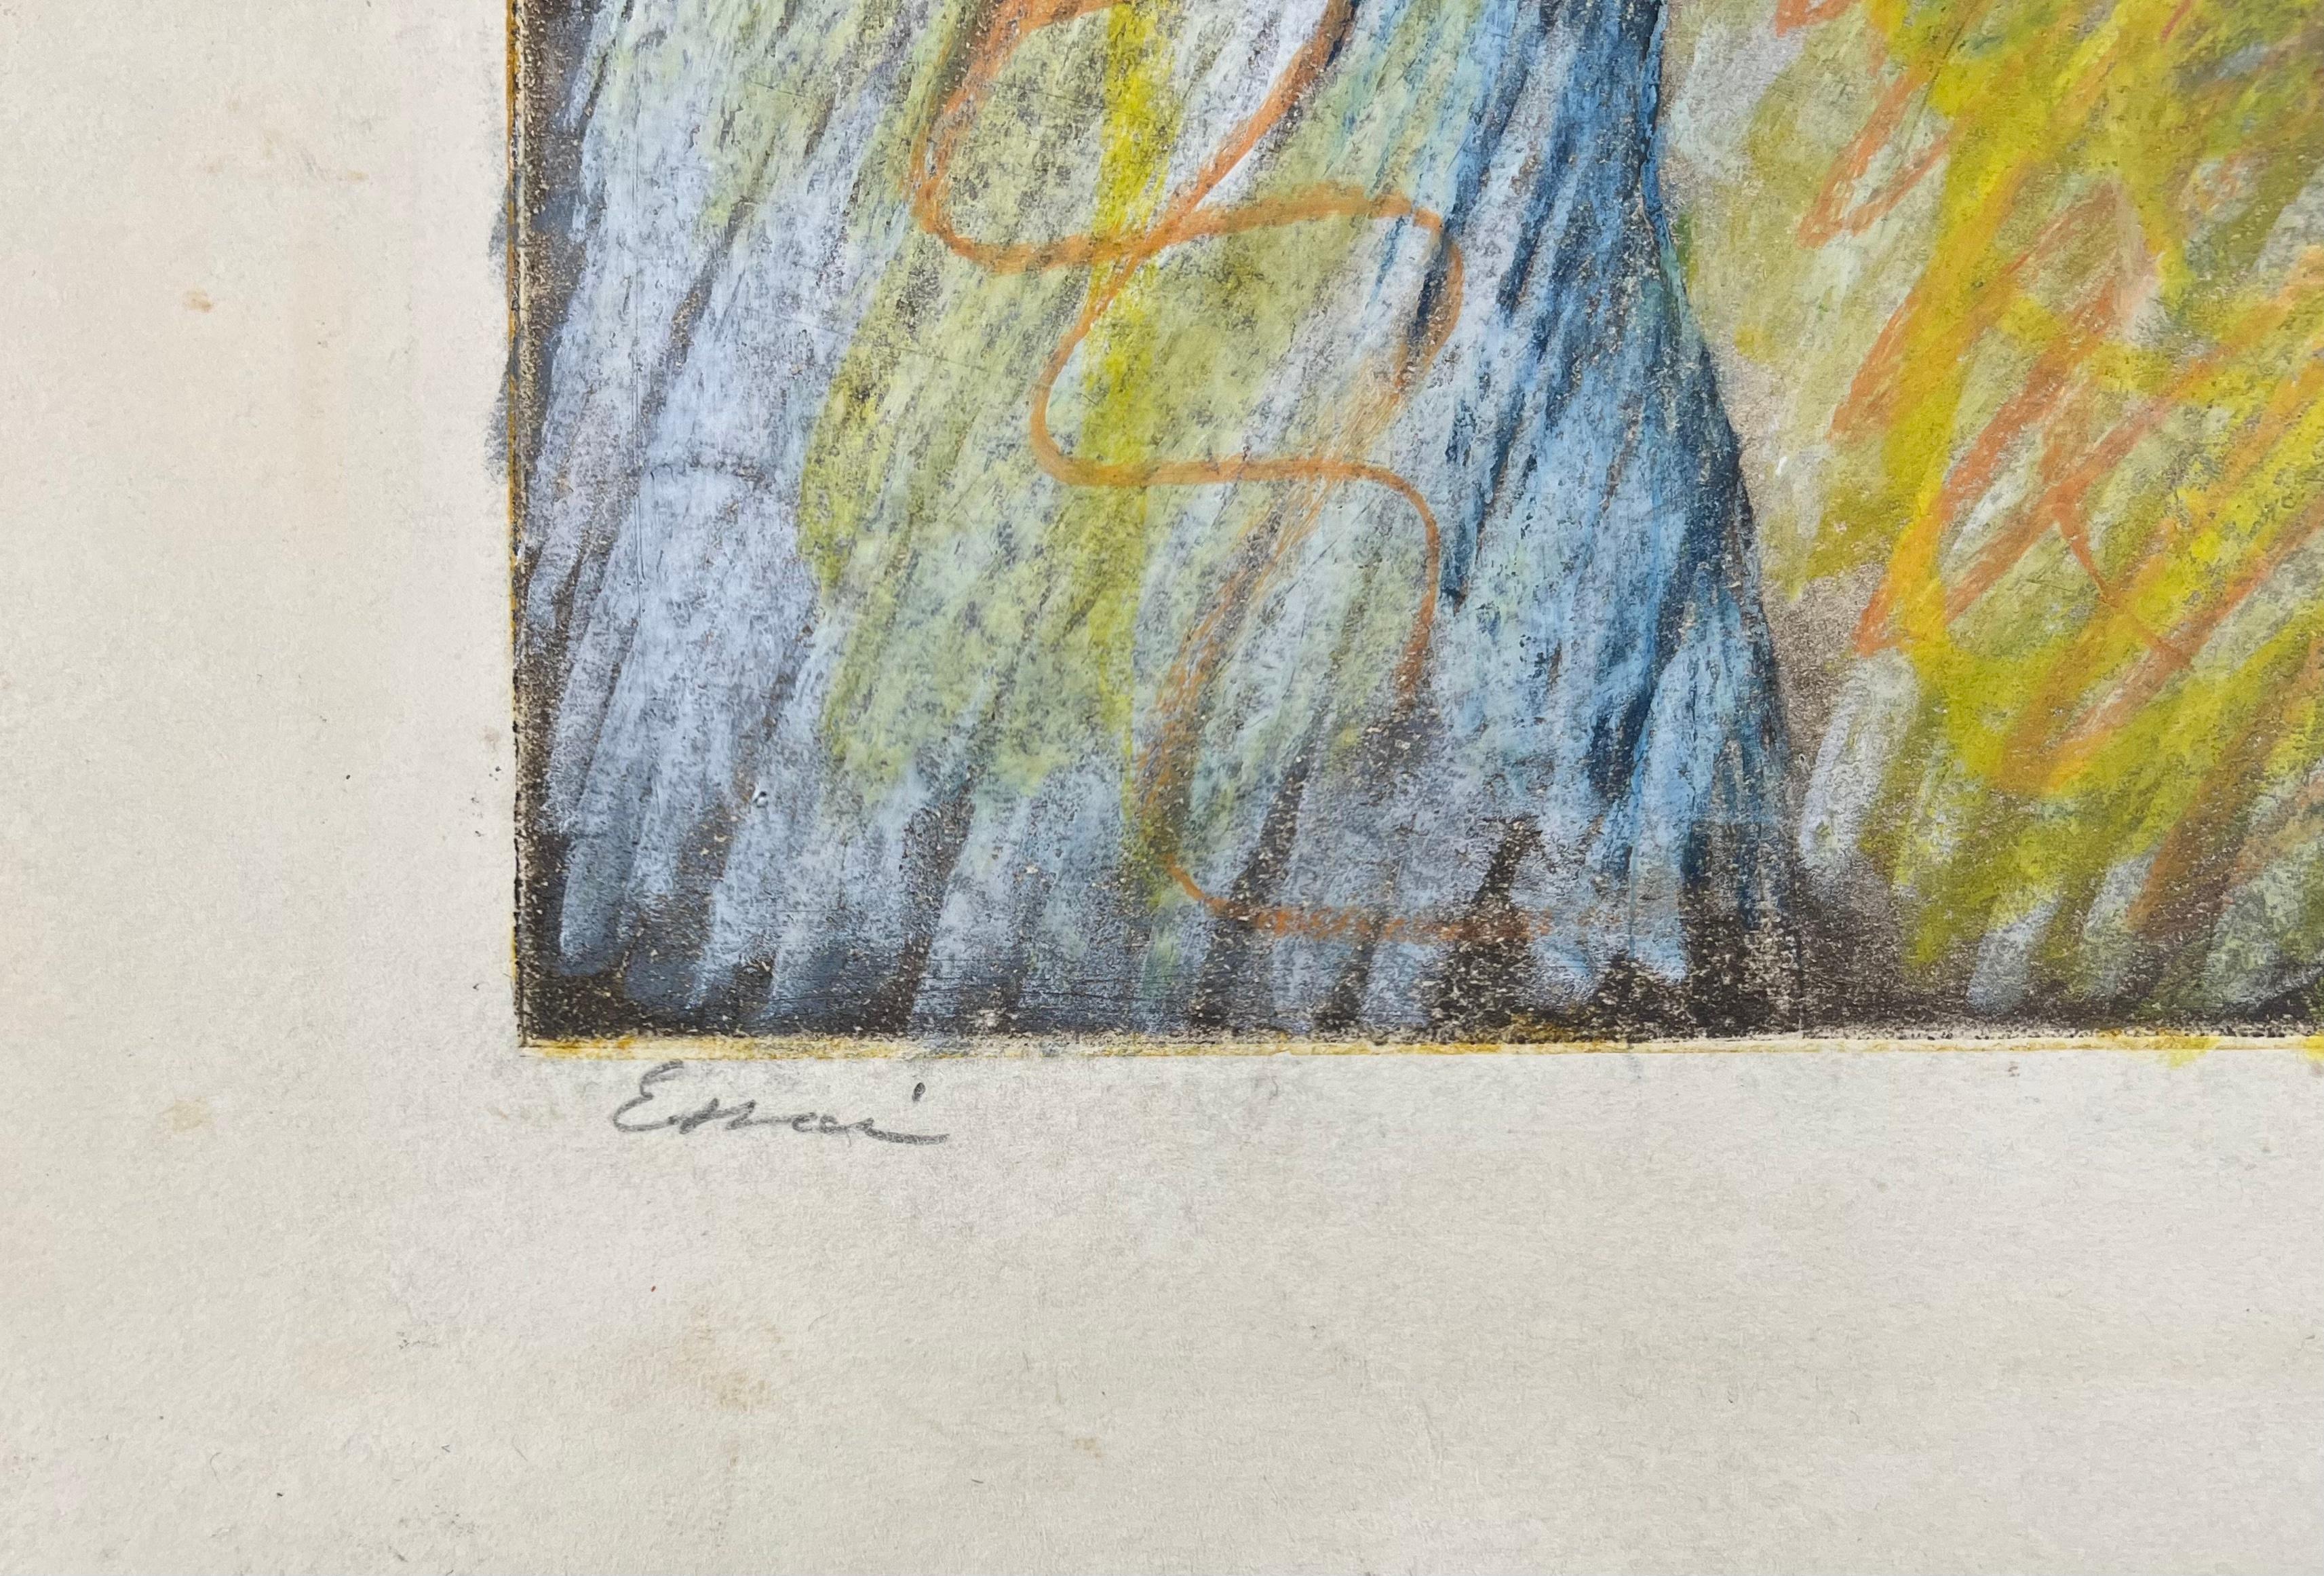 Roberto Sebastián Matta (1911-2002)
Feuilles ouvertes, 1971
Eau-forte et aquatinte, largement coloriée à la main au pastel
Signée au crayon et annotée 